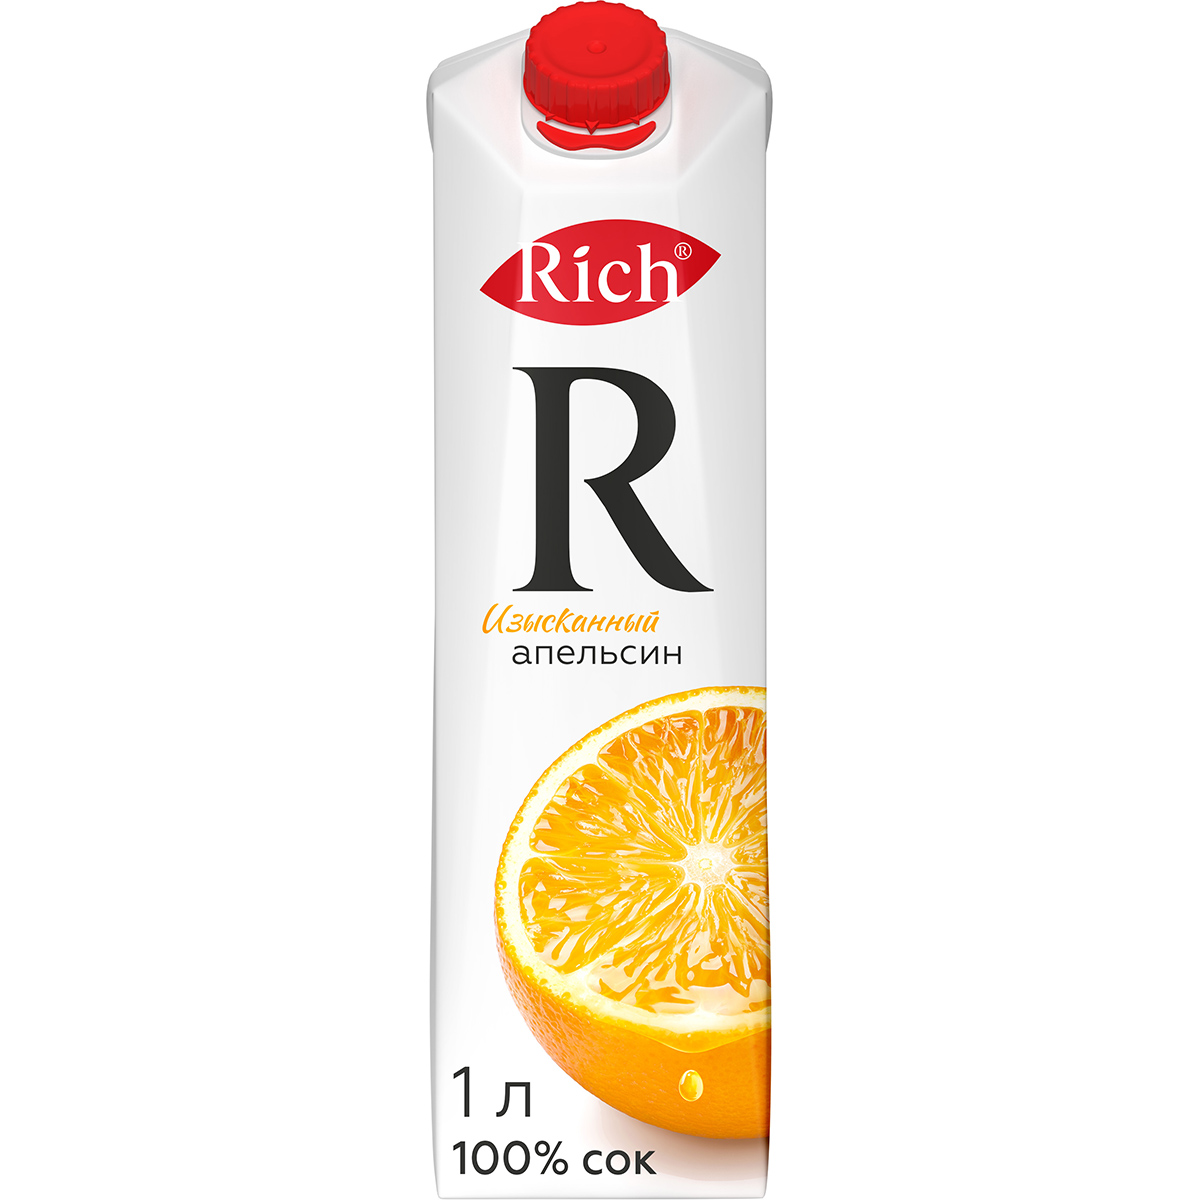 Сок Rich апельсиновый с мякотью 1 л сок глобус апельсиновый обогащенный витамином с 1 л